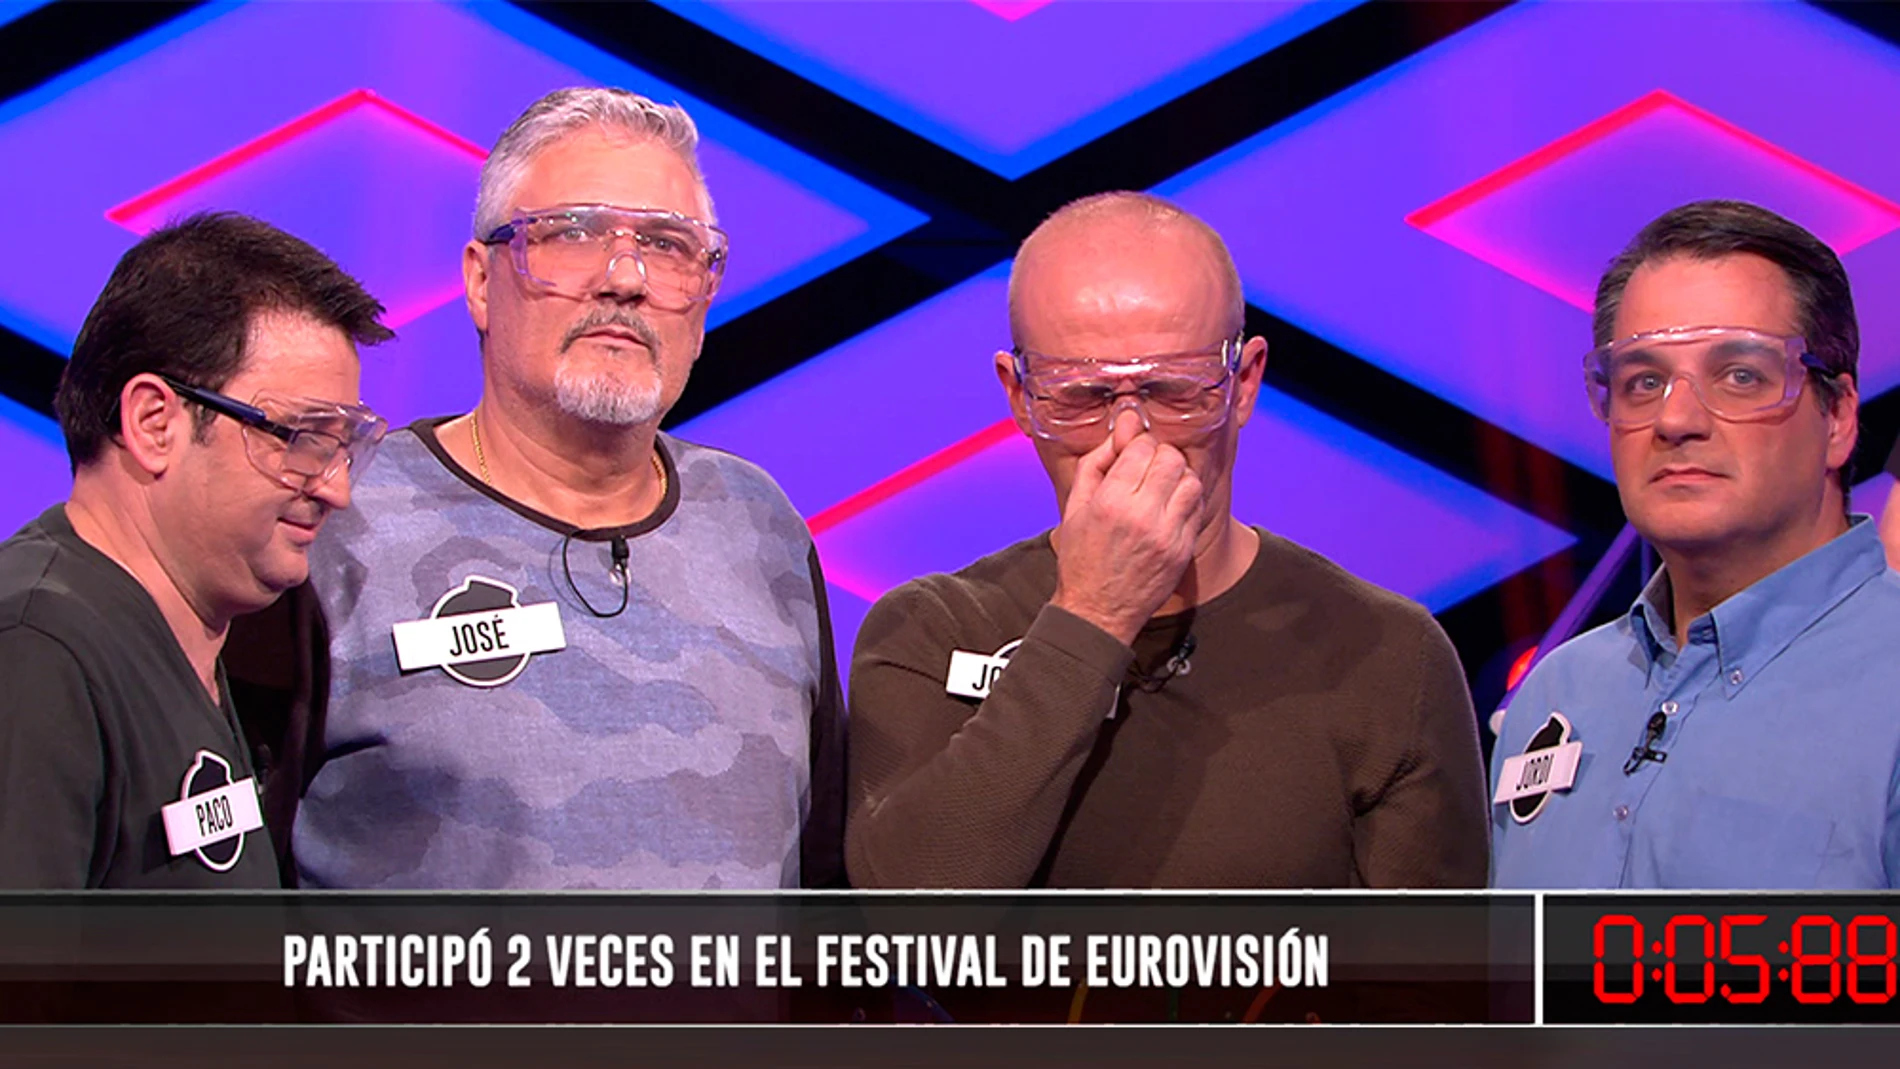 ¿Quién ha ido dos veces a Eurovisión